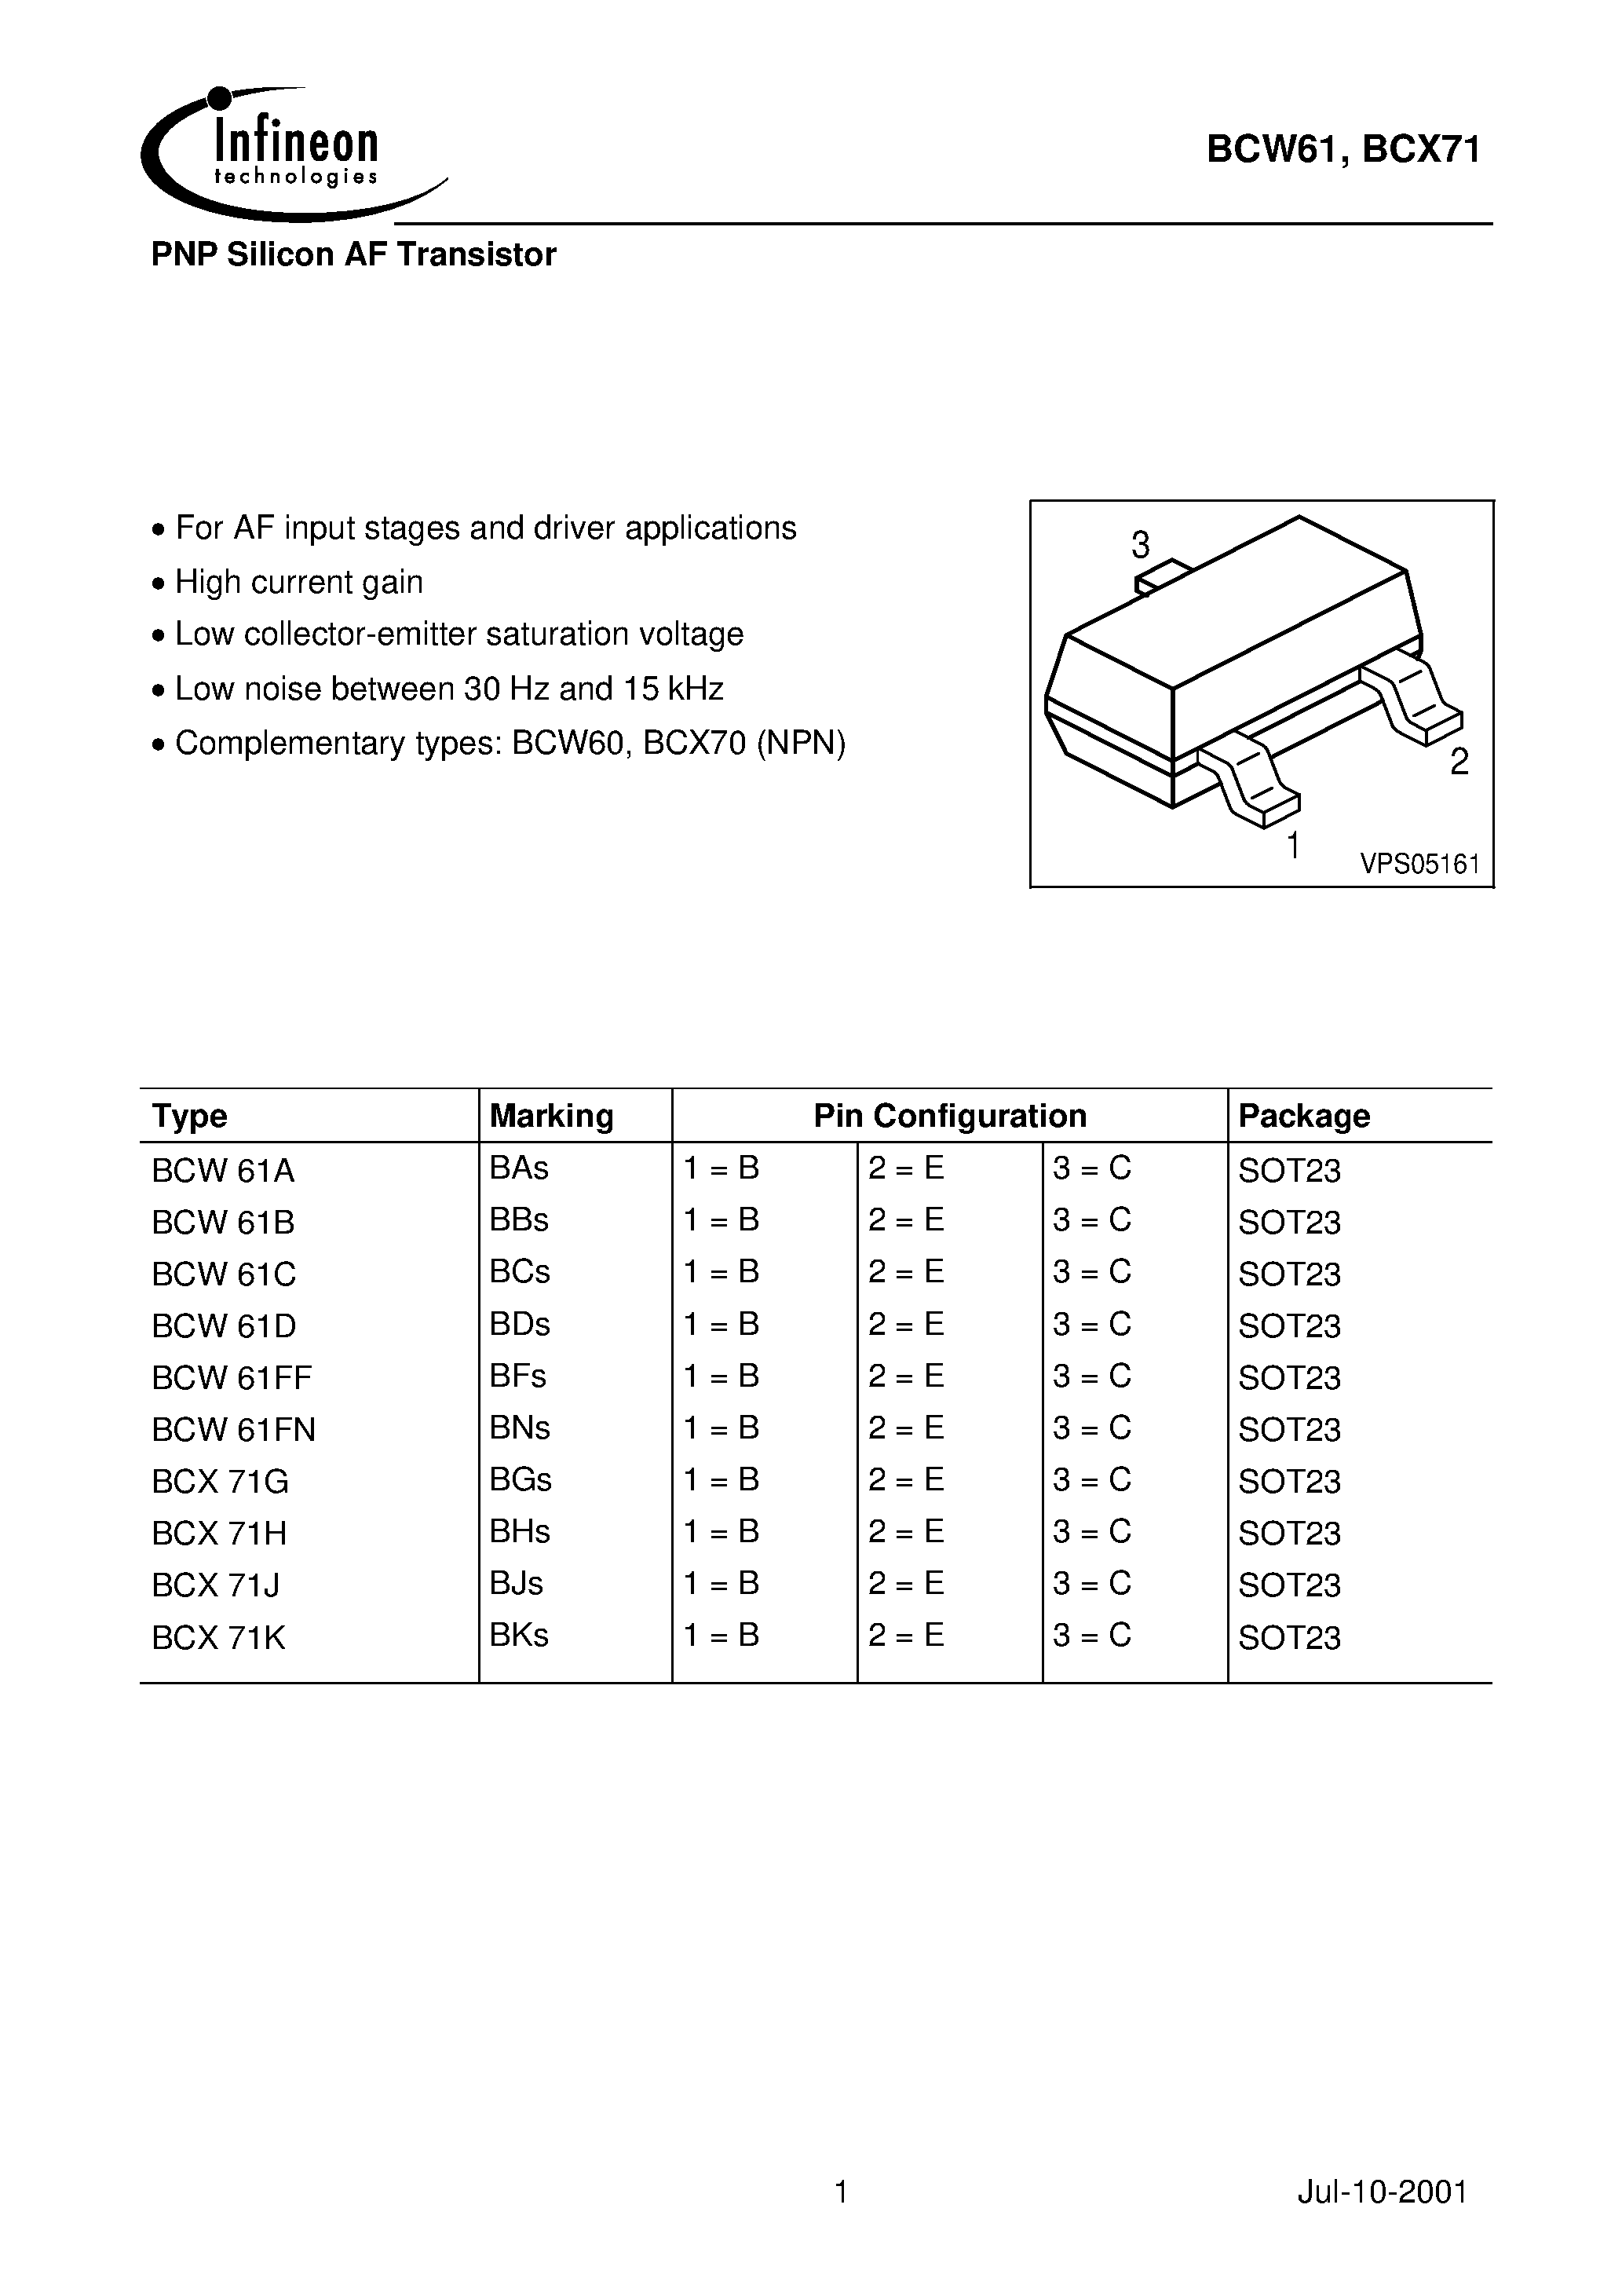 Даташит BCX71G - PNP Silicon AF Transistor страница 1